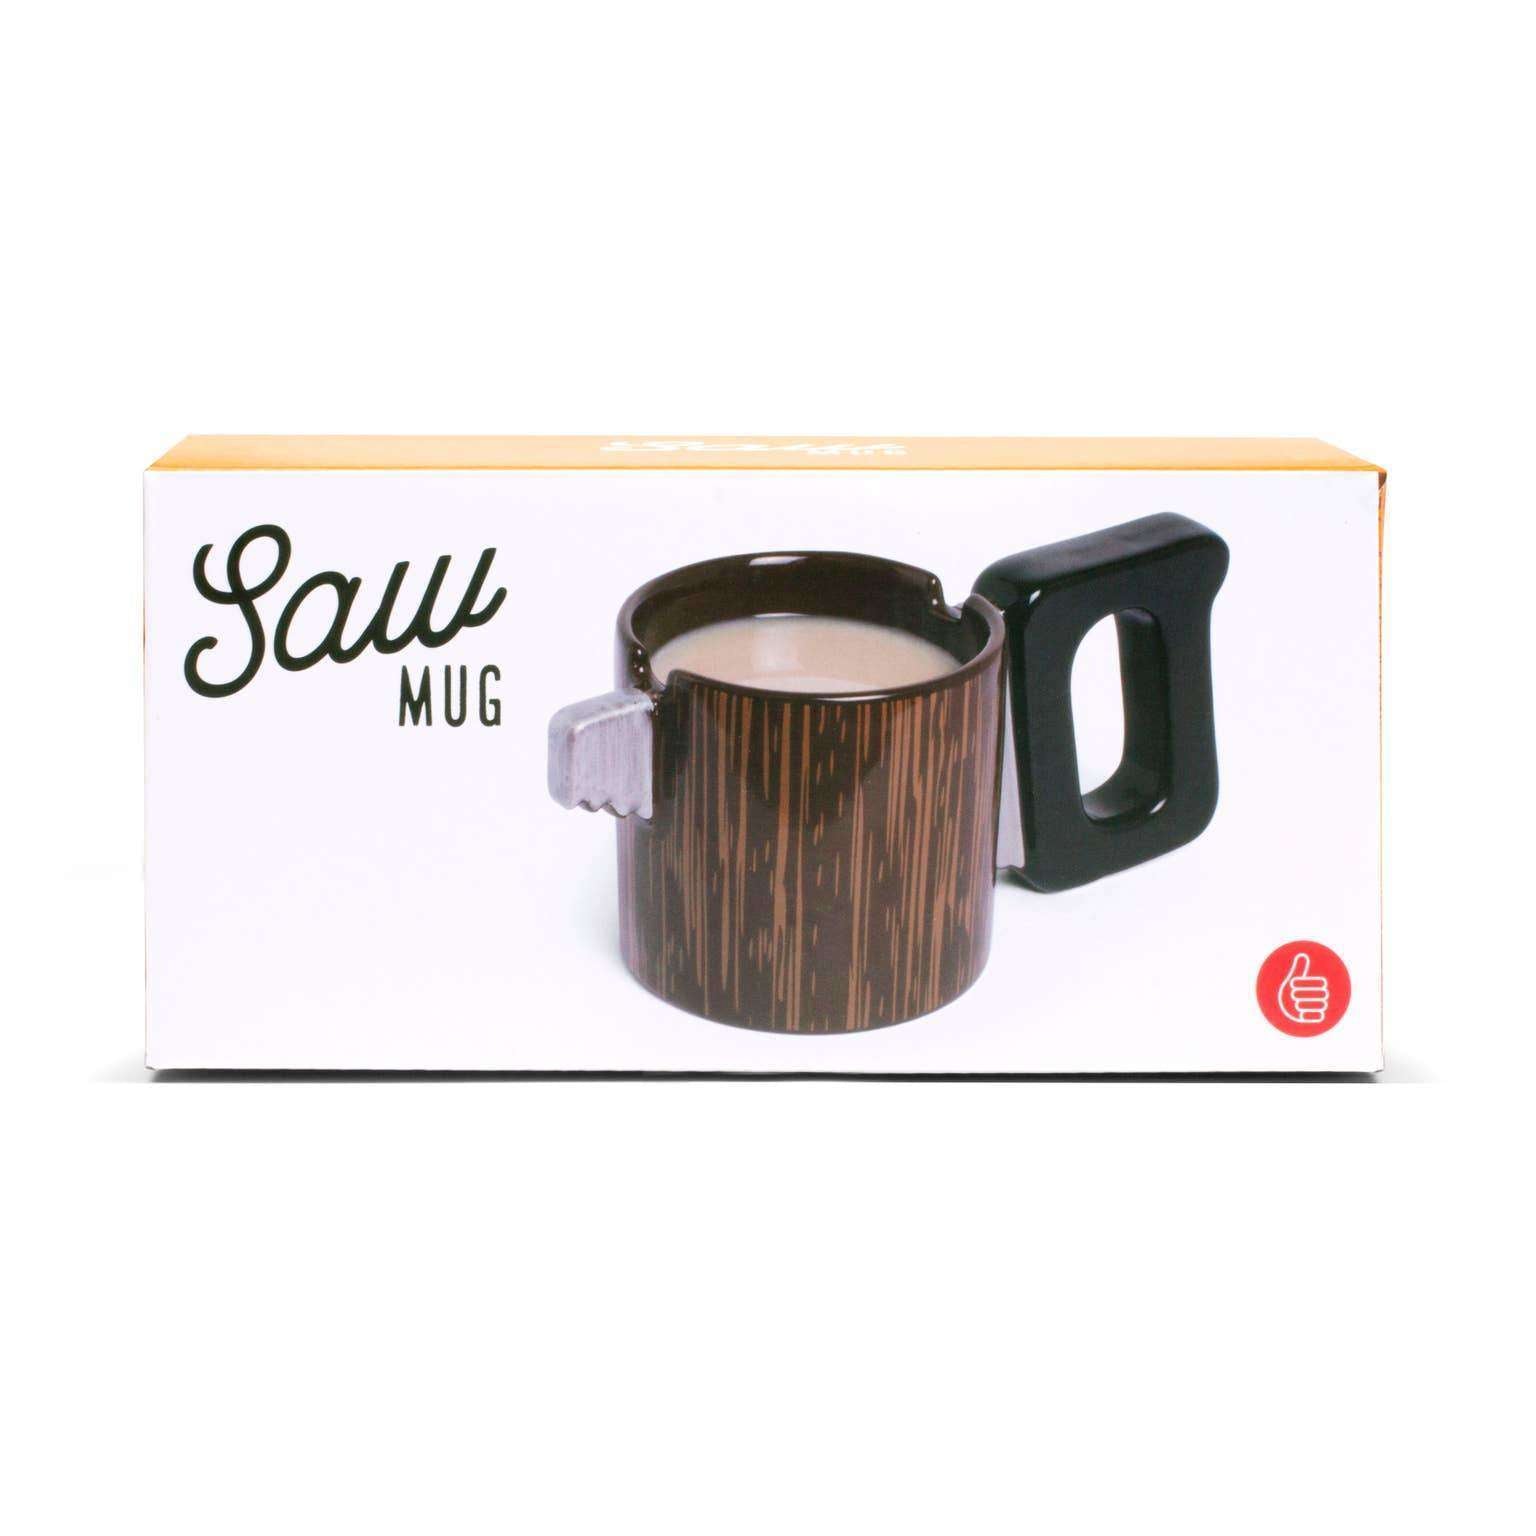 Saw Coffee Mug